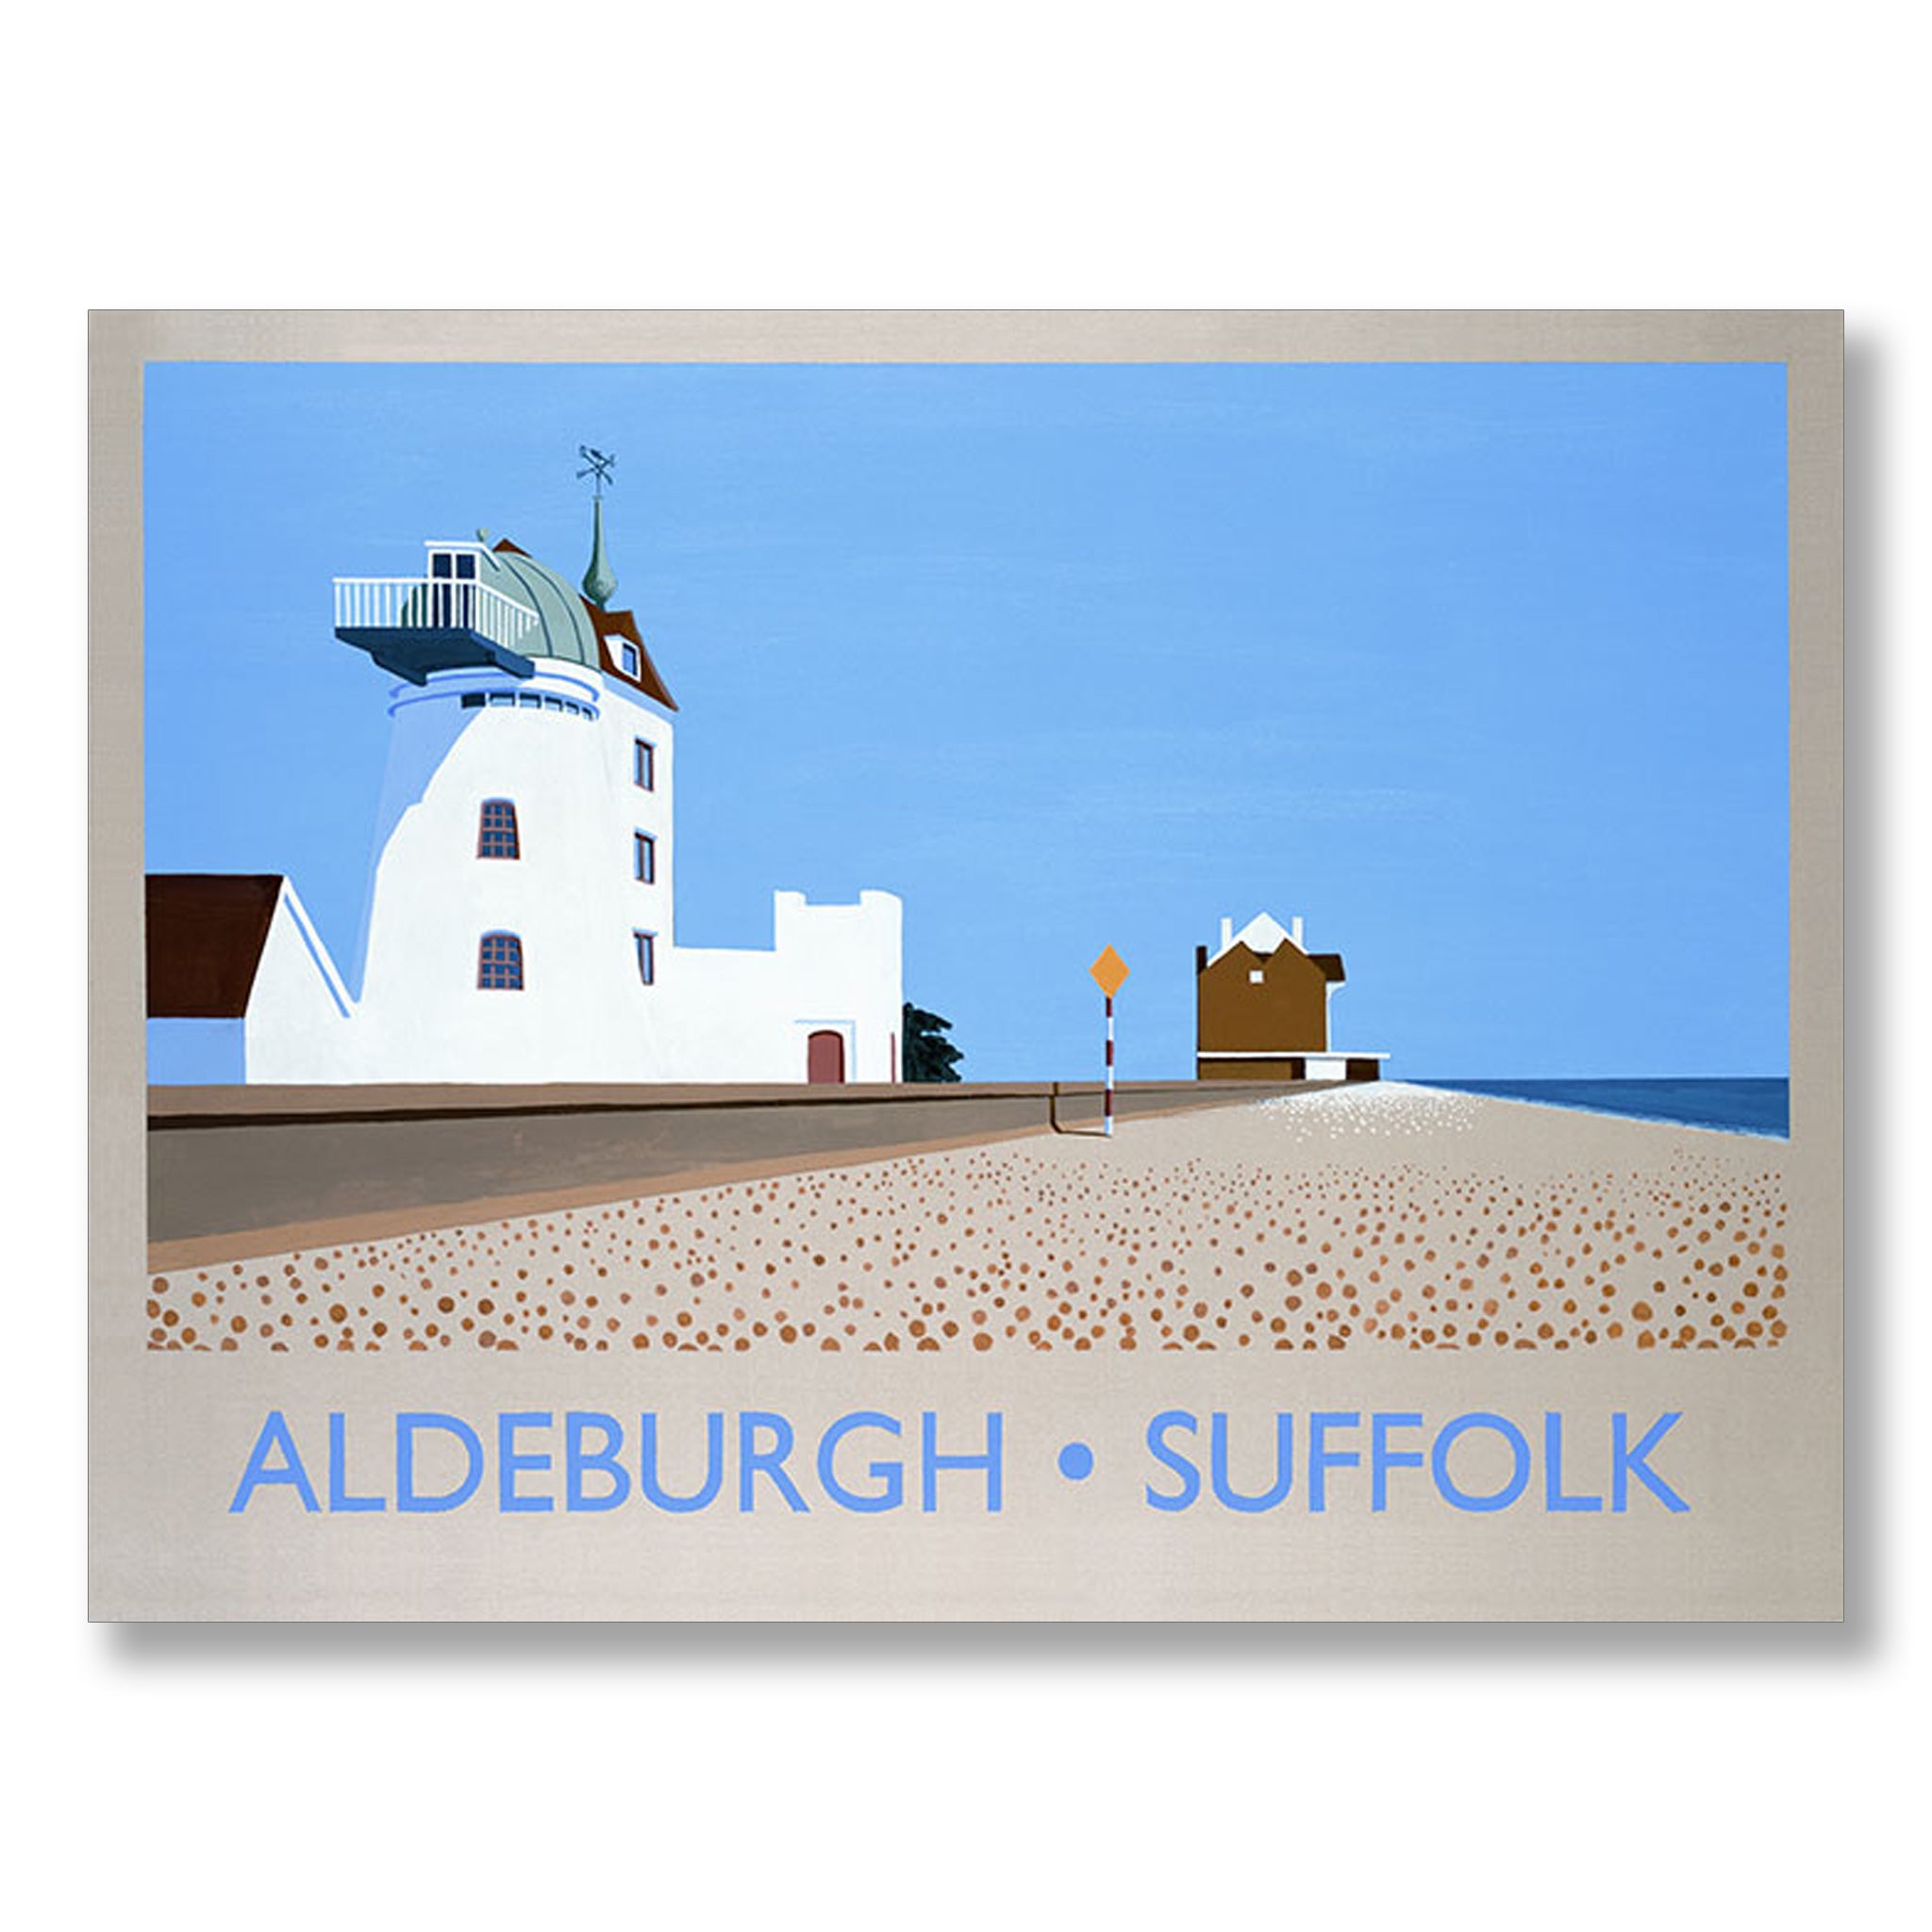 Aldeburgh Suffolk by David Kirk